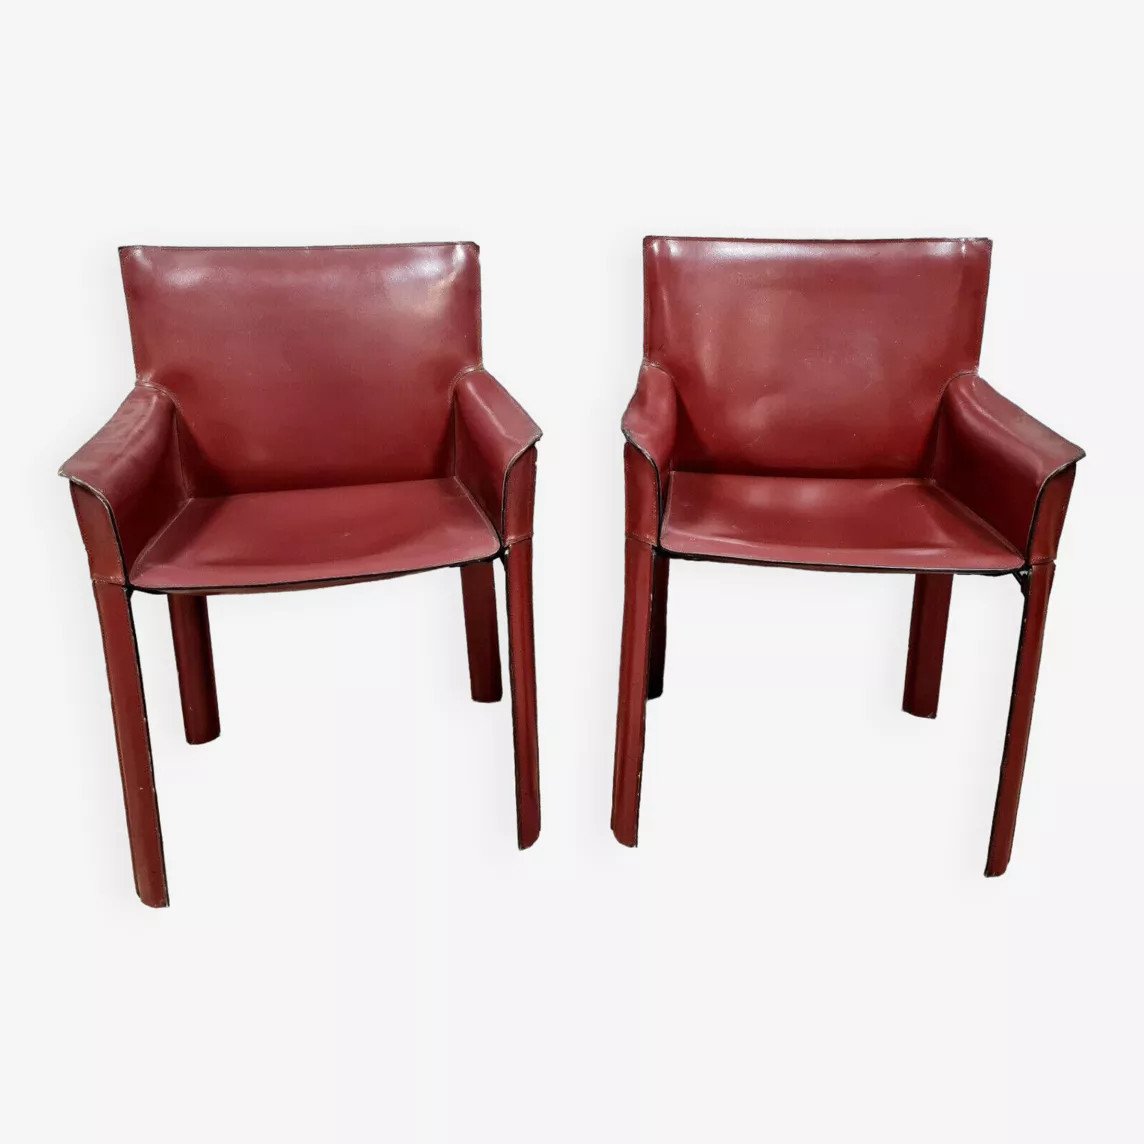 D'après Mario Bellini pour Cassina:&nbsp; paire de fauteuils cab 413 en cuir oxblood vers 1970.